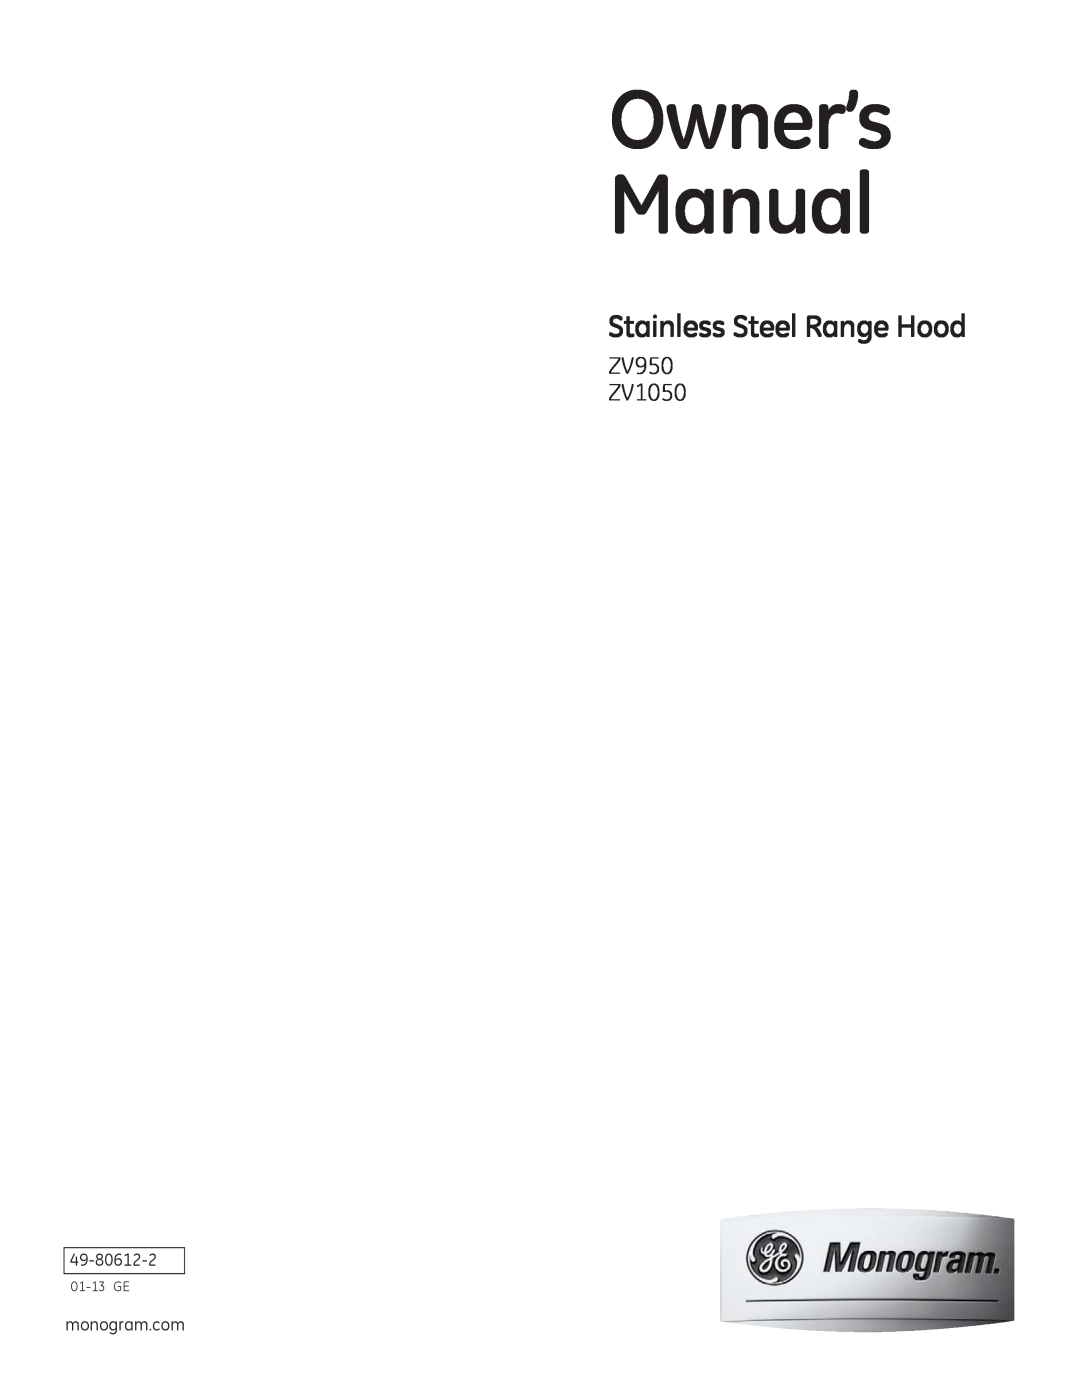 GE owner manual ZV950 ZV1050, Stainless Steel Range Hood, 01-13GE 